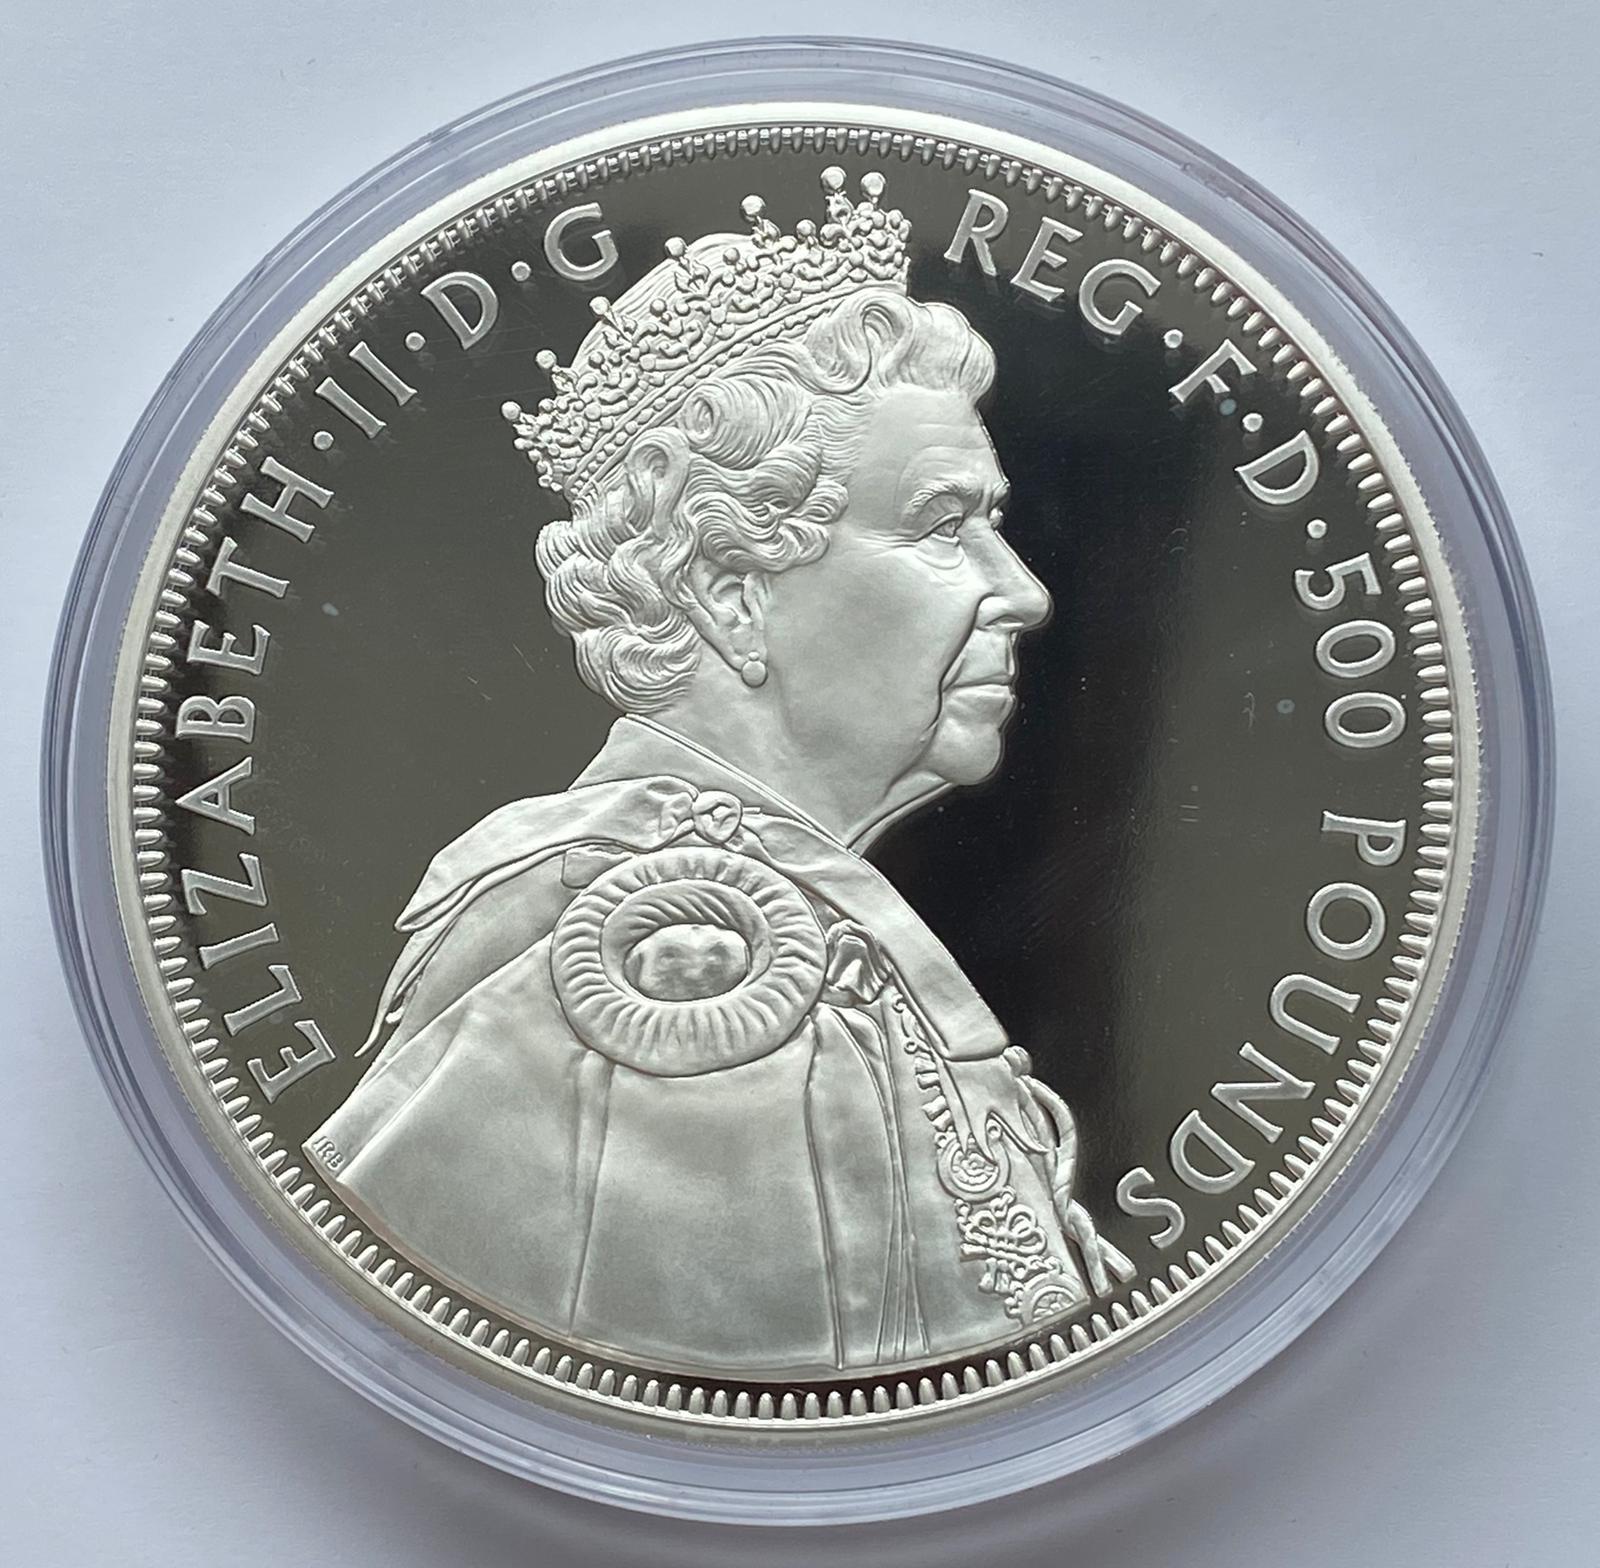 2012-Royal-Mint-Diamond-Jubilee-Silver-Proof-One-Kilo-2